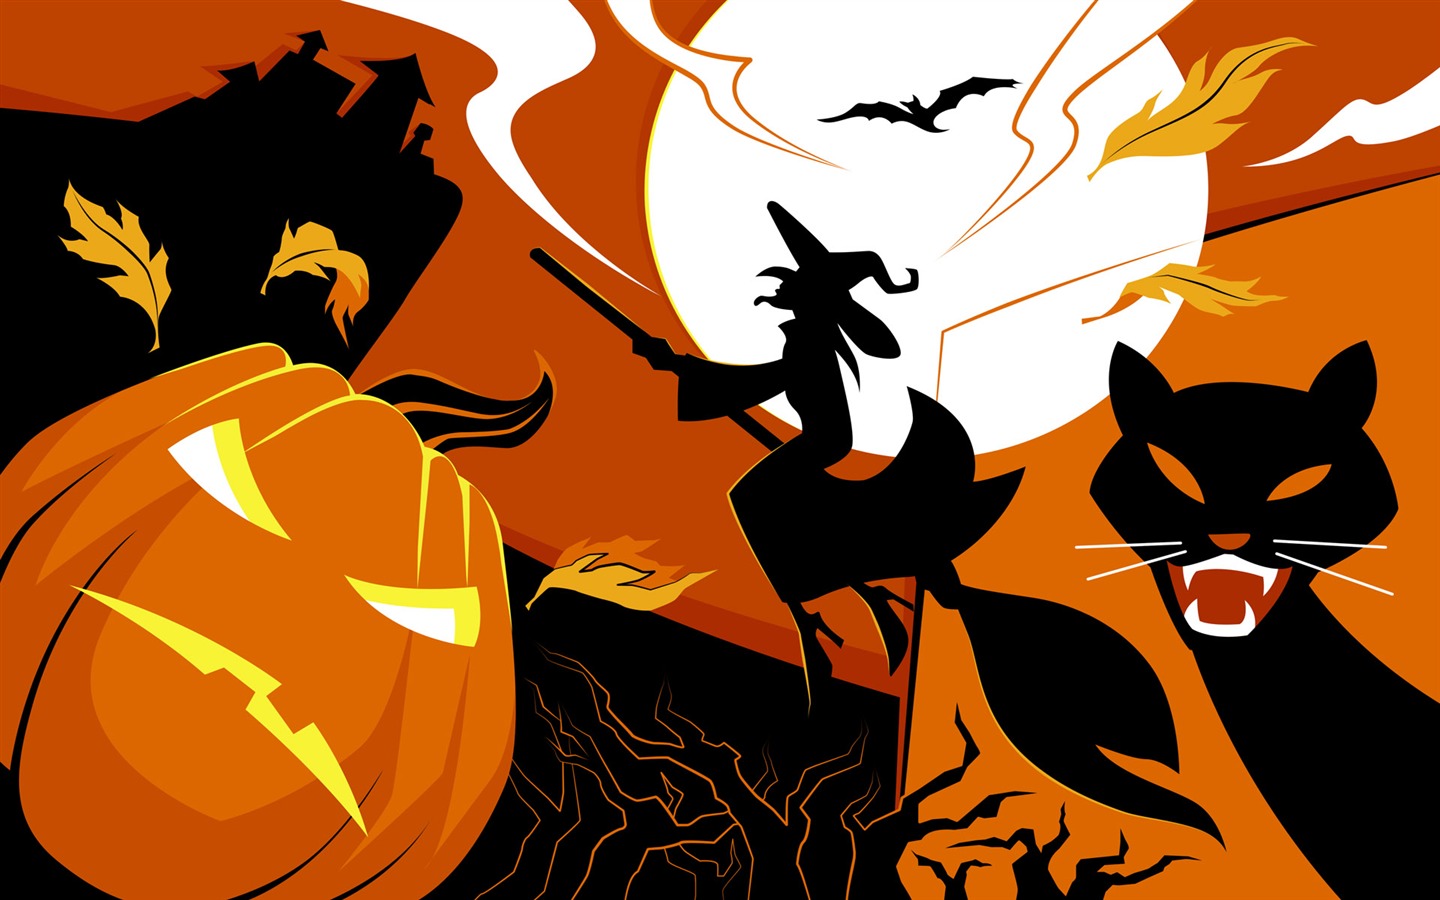 Fondos de Halloween temáticos (5) #13 - 1440x900